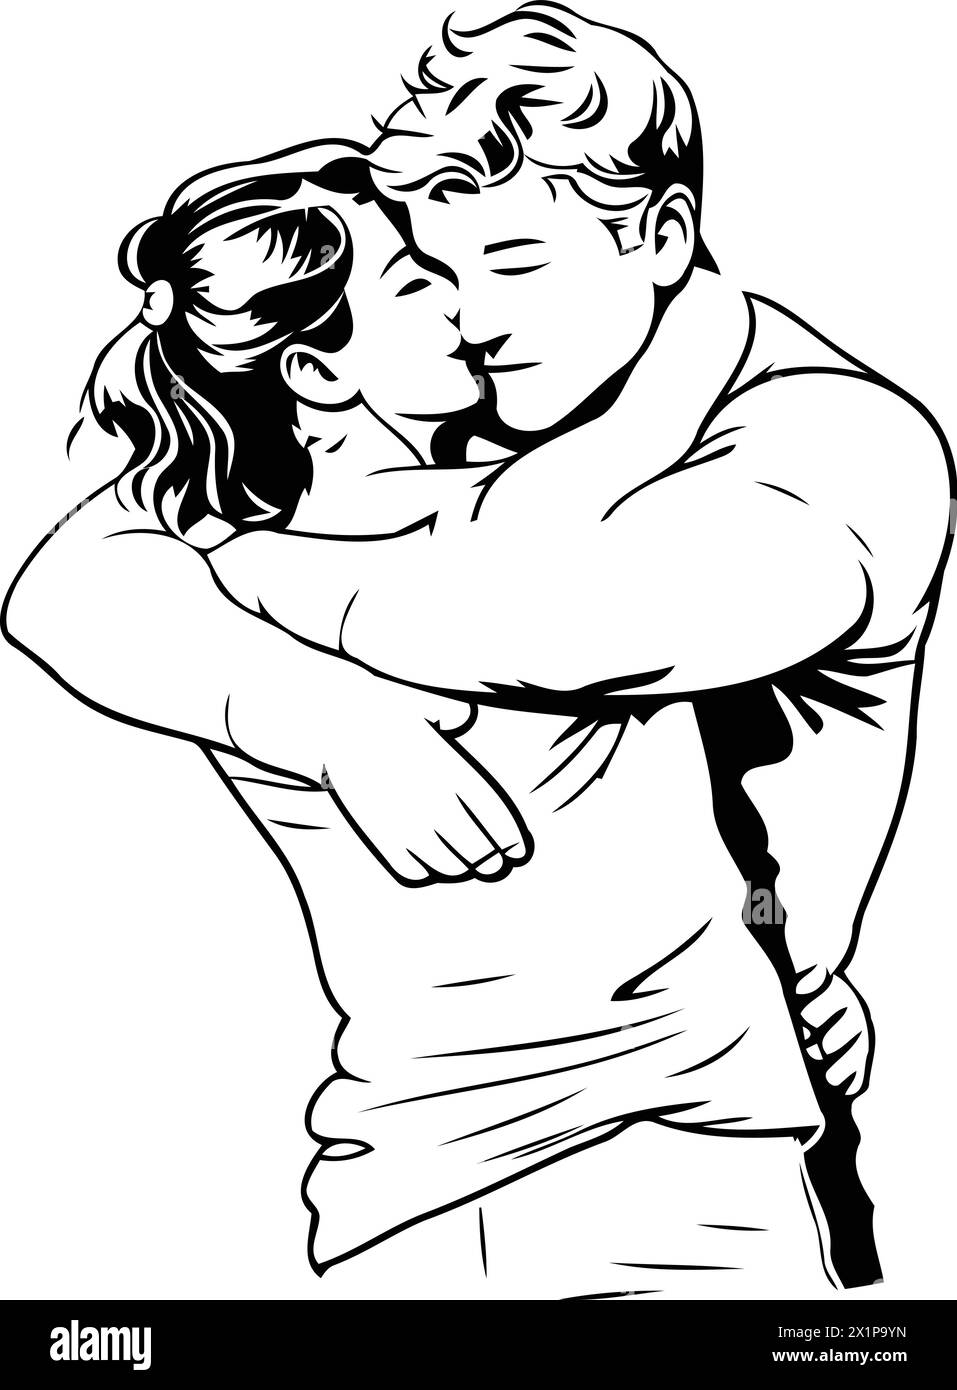 Vektor-Illustration eines liebevollen Paares, das sich auf einem orangen Hintergrund umarmt. Stock Vektor